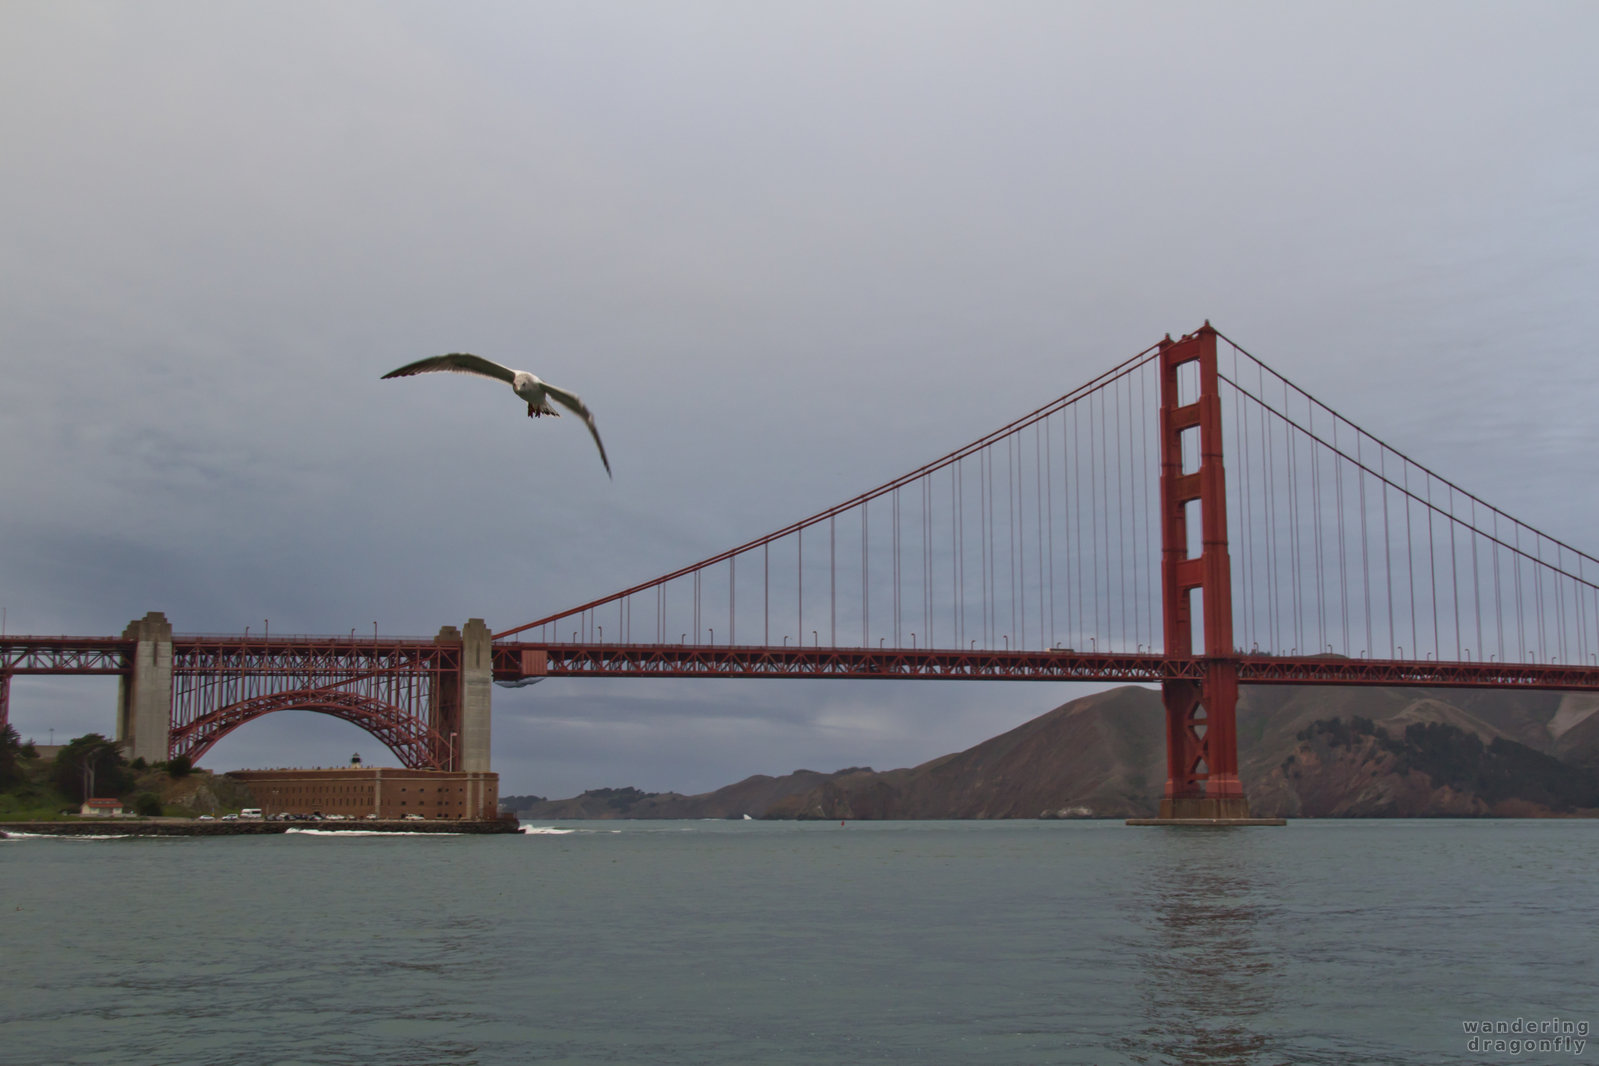 The giant gull -- bridge, gull, water